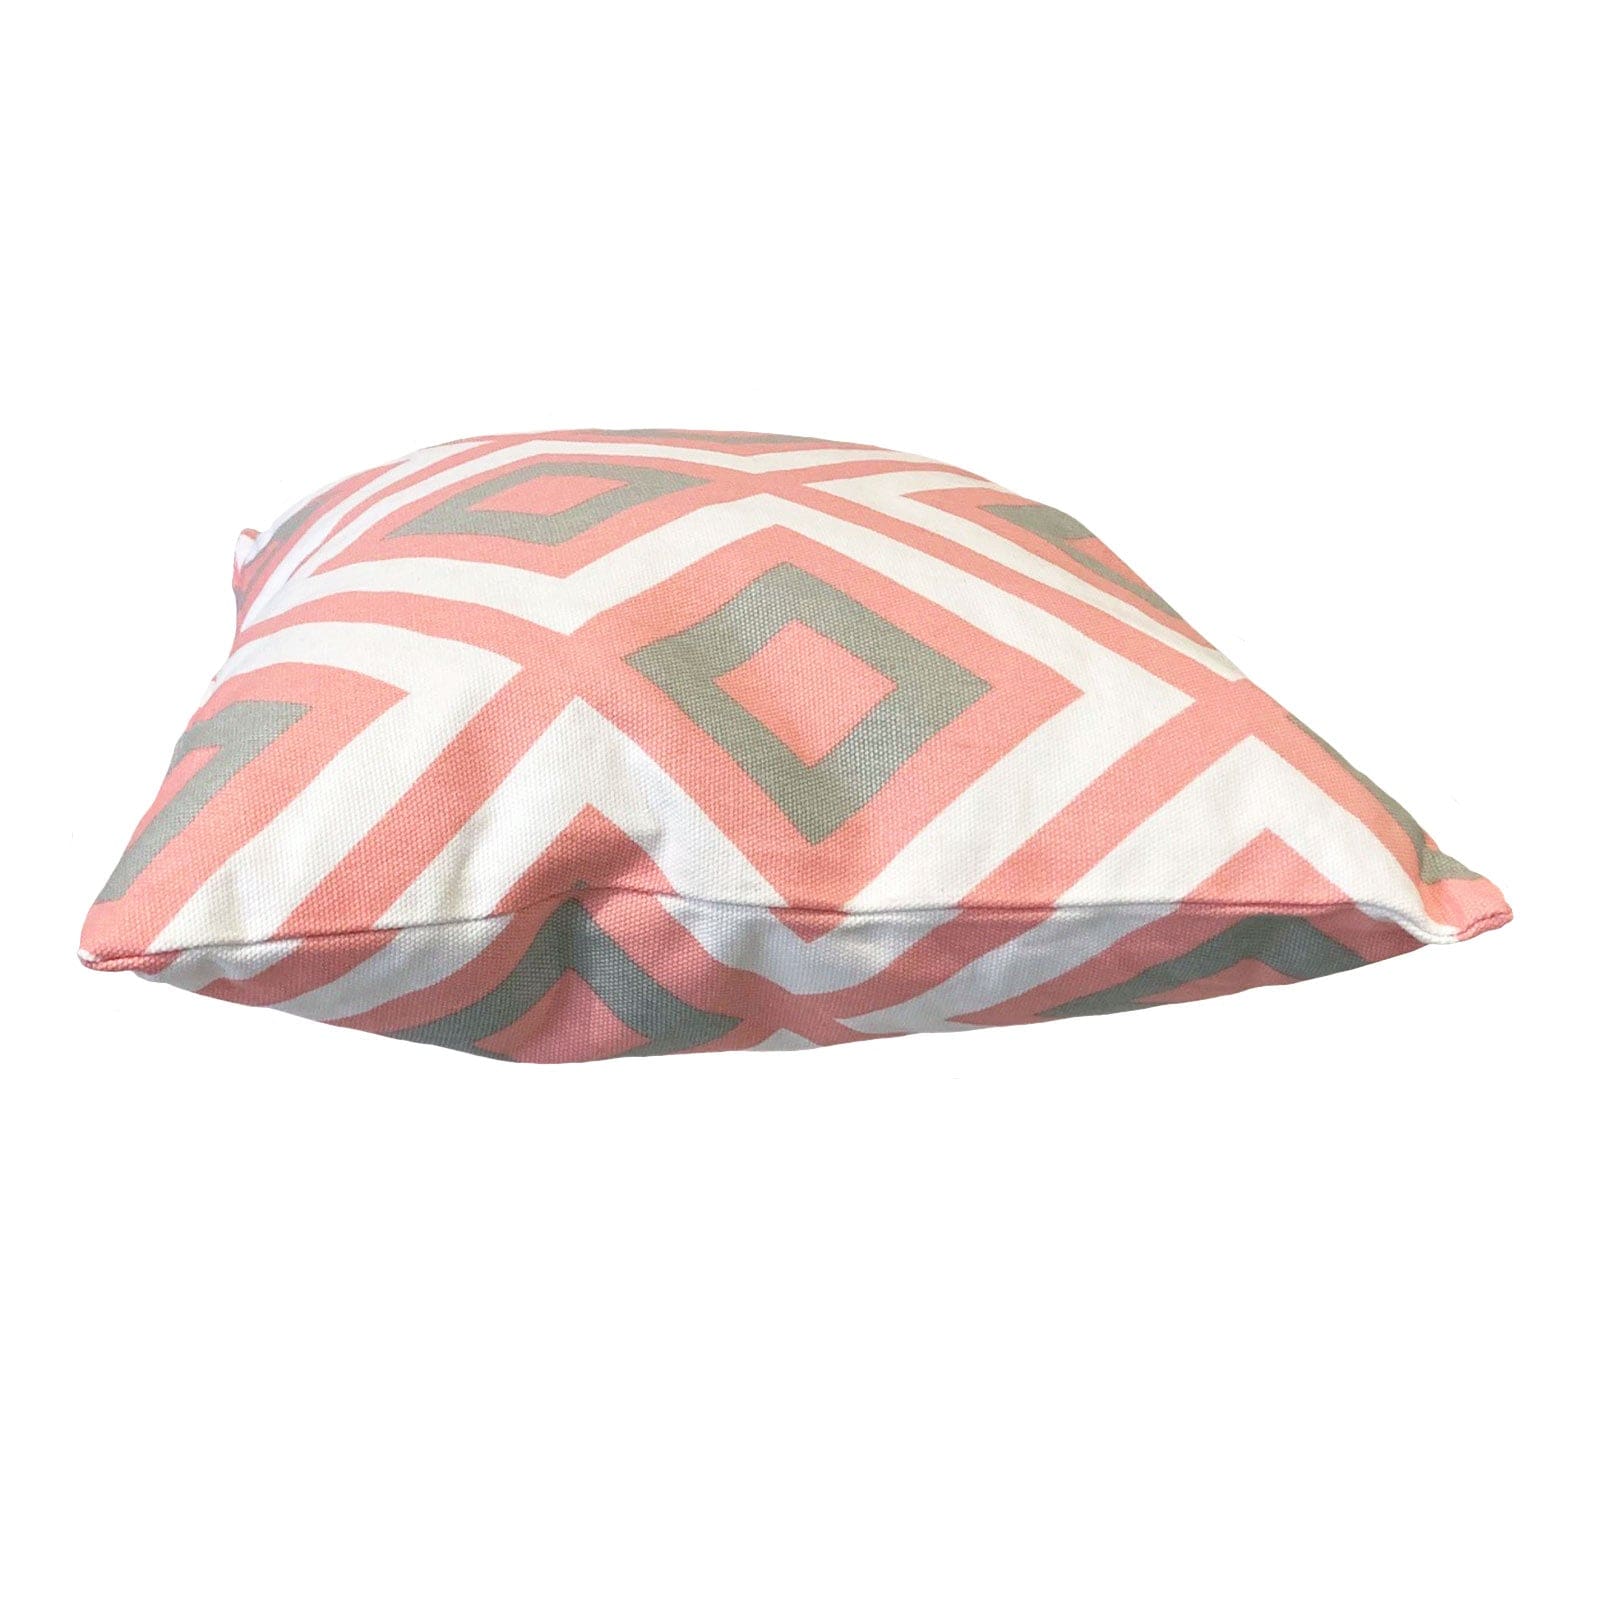 Pink Diamond Outdoor Cushion